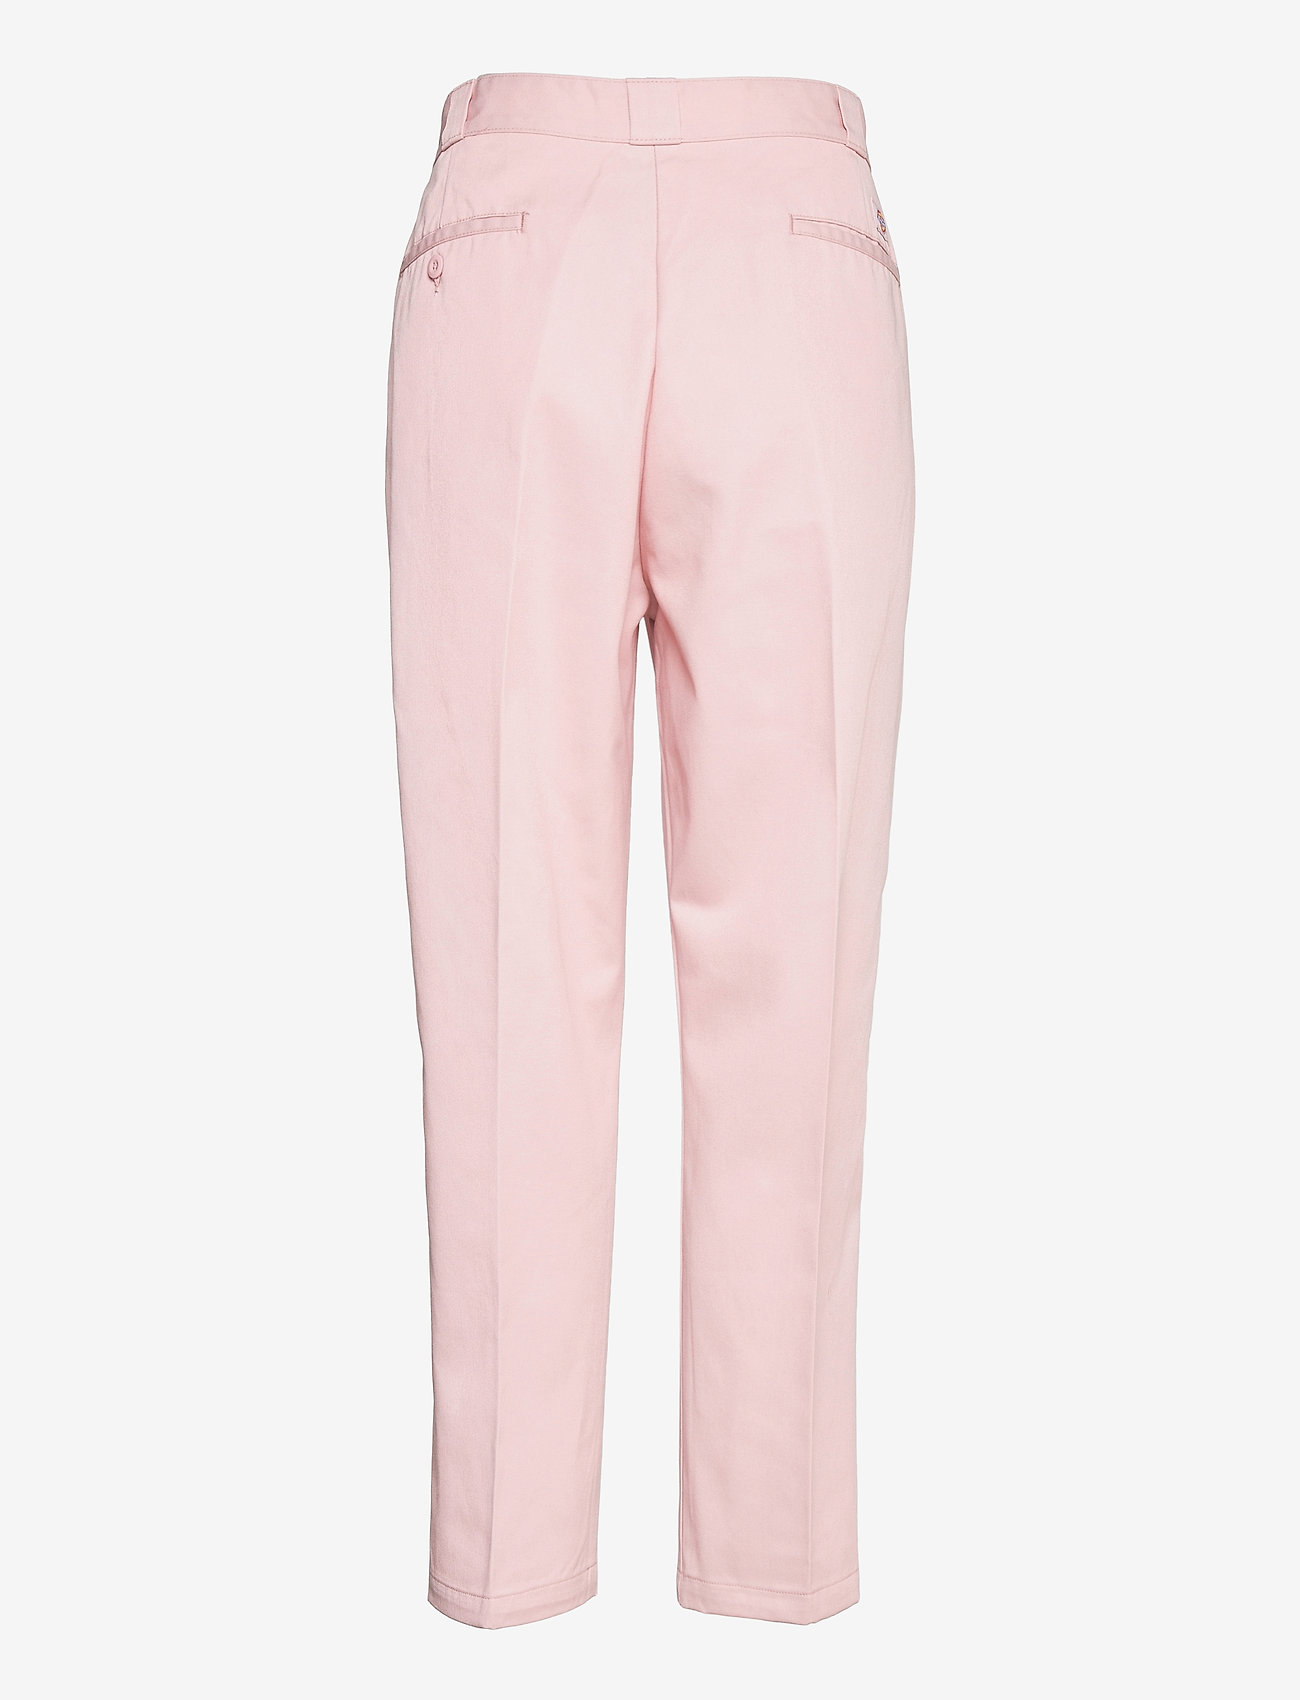 Dickies - ELIZAVILLE FIT WORK PANT - bukser med lige ben - light pink - 1